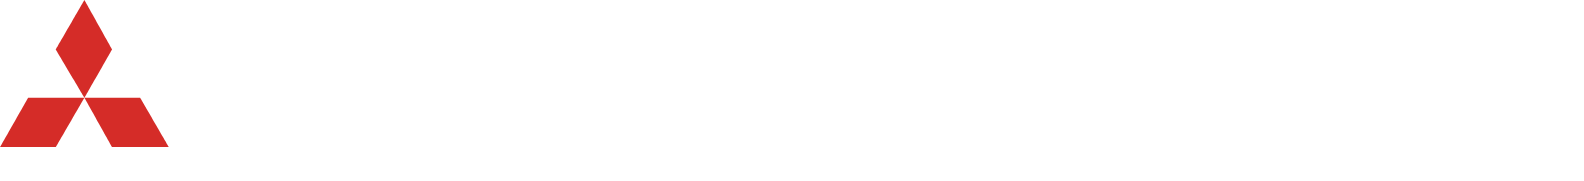 Mitsubishi Corporation logo grand pour les fonds sombres (PNG transparent)